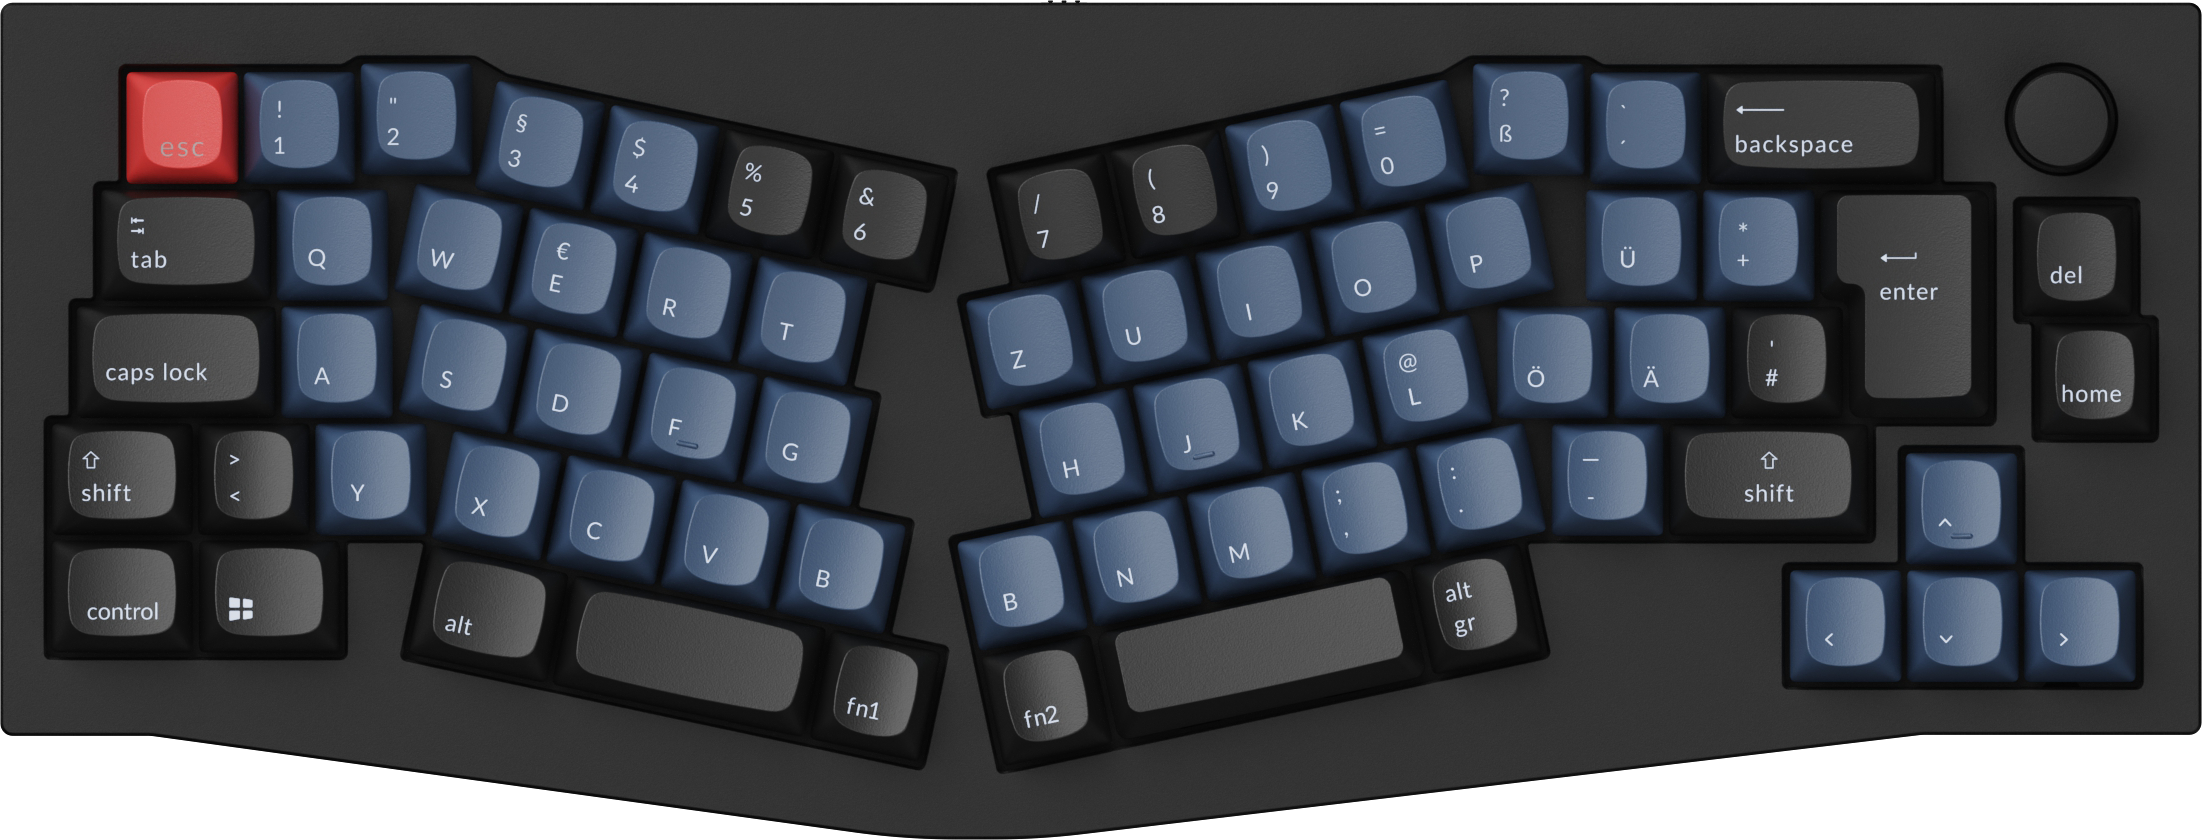 Keychron Q8 ISO Layout 65% Alice Layout Custom Mechanical Keyboard